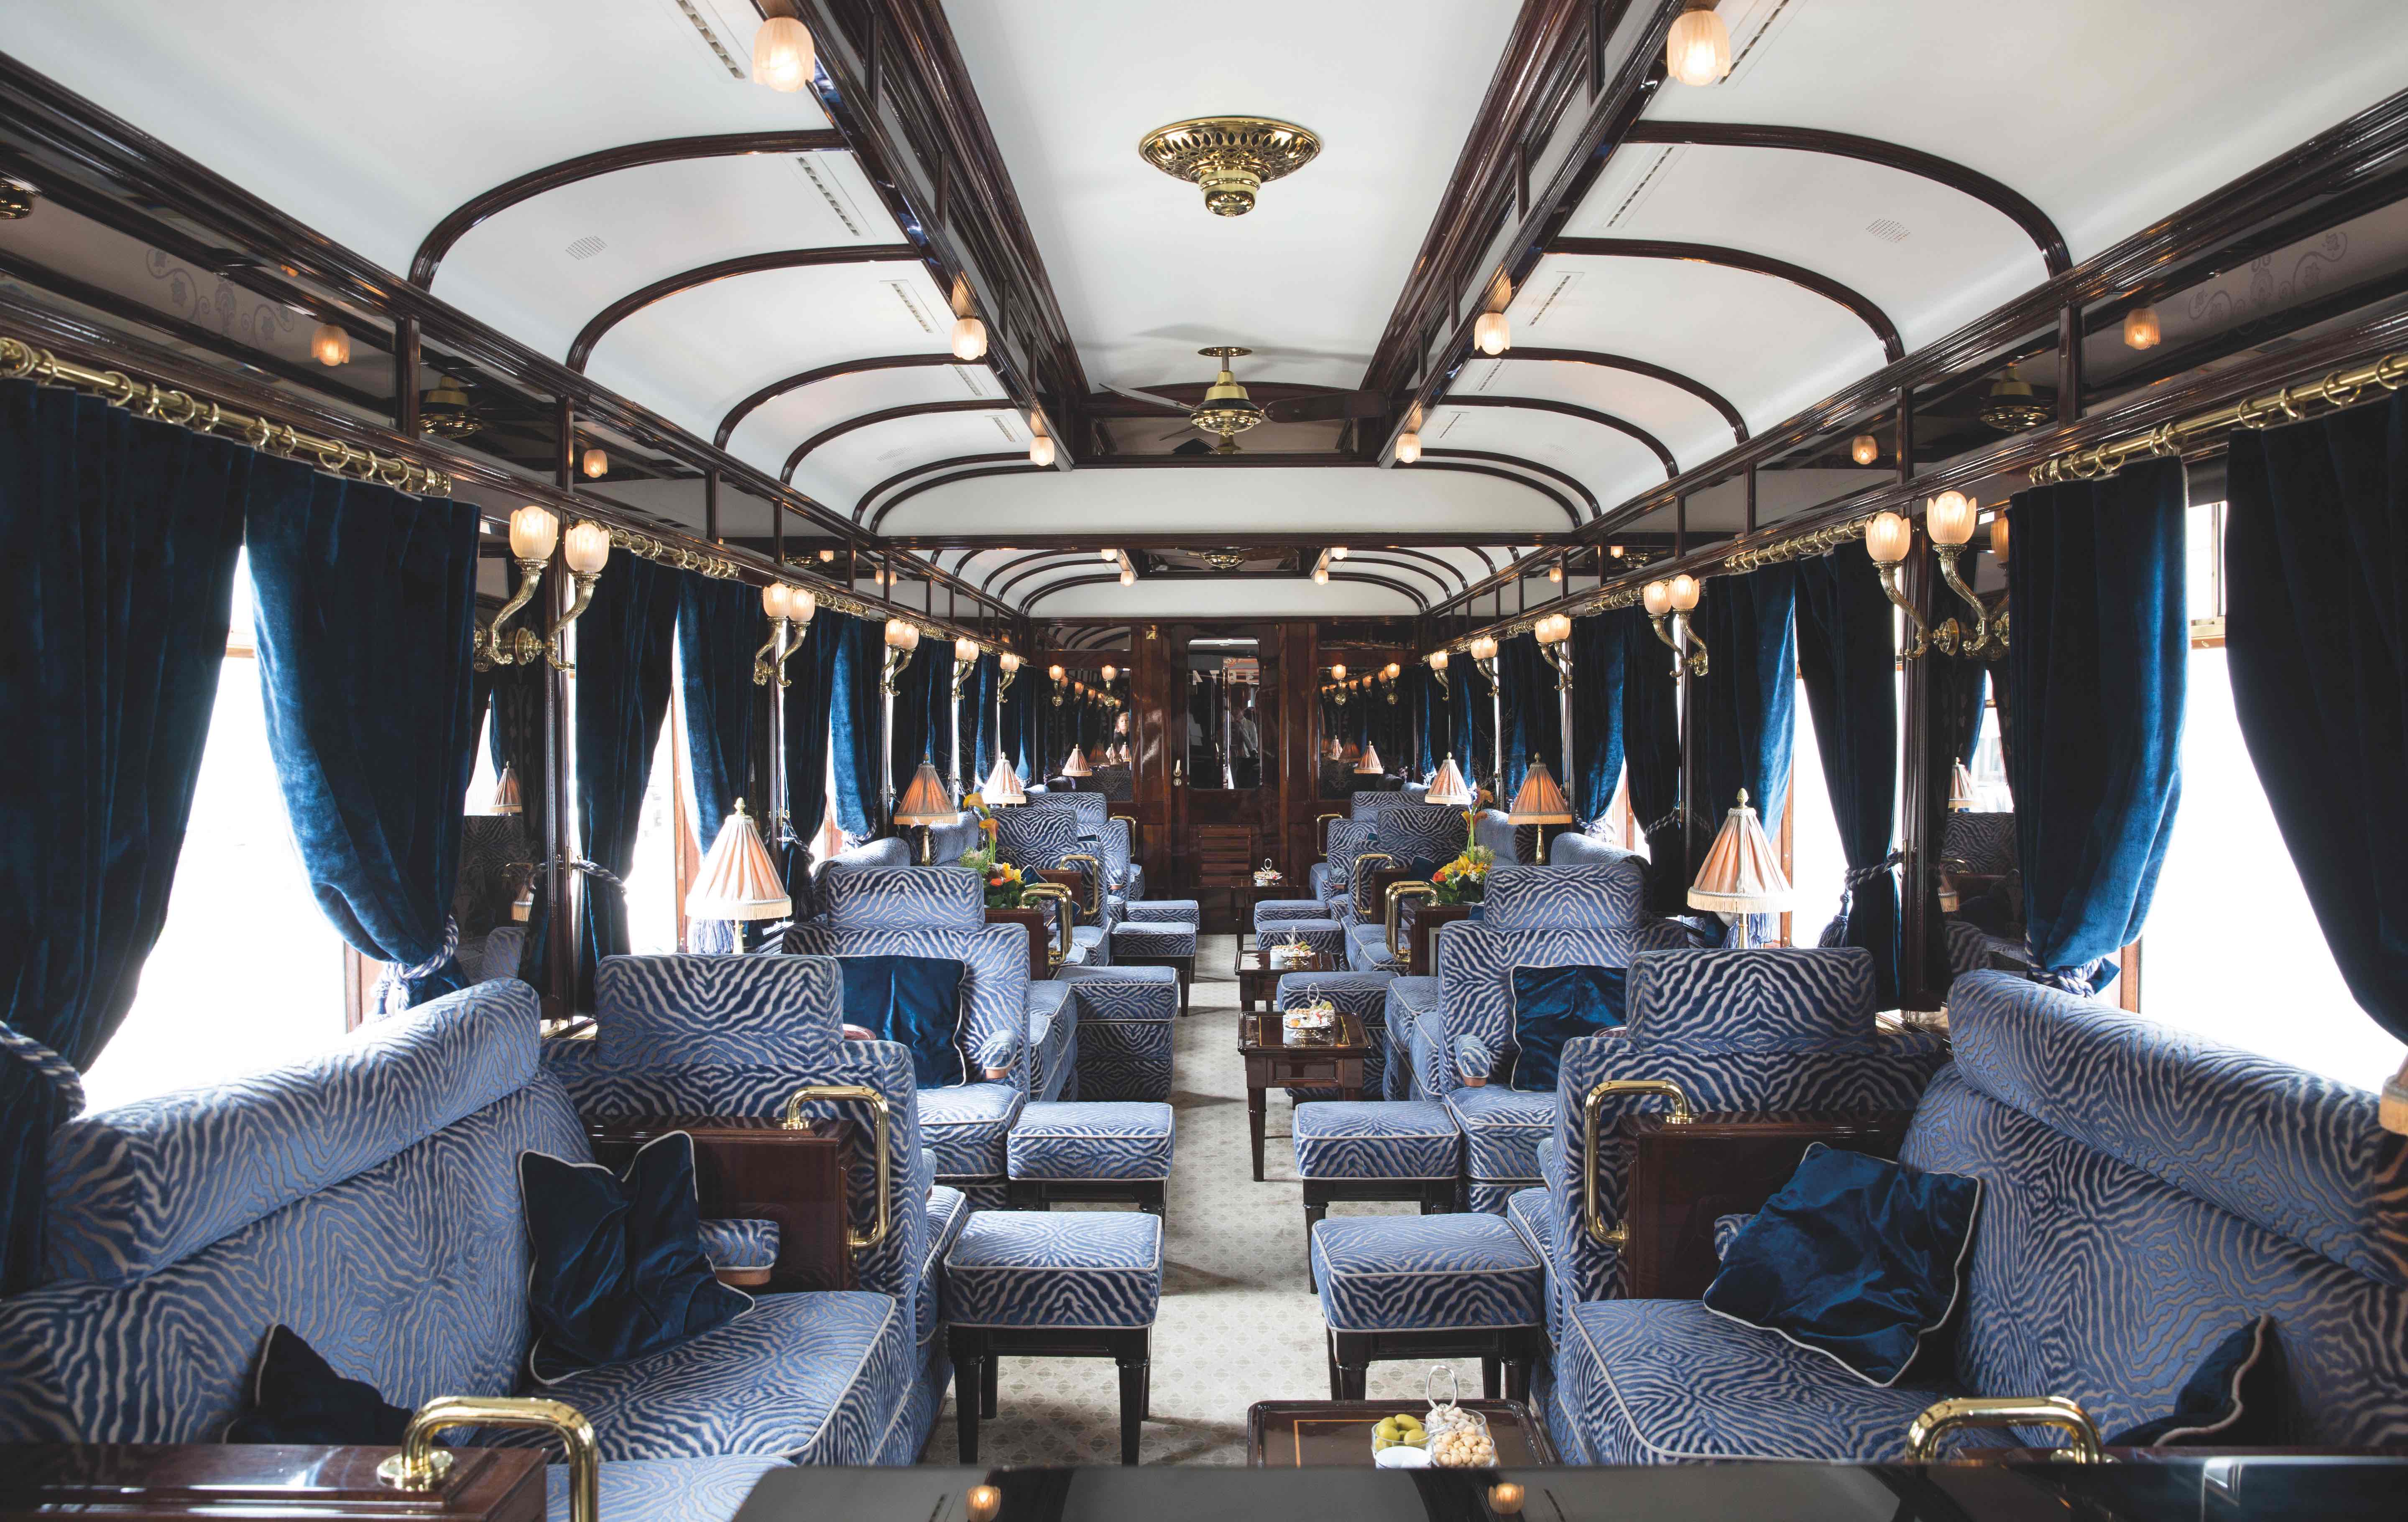 豪華的酒吧車廂裡也以藍色系沙發、窗簾等陳設，與 Venice Simplon Orient Express 的經典藍色車廂相呼應。